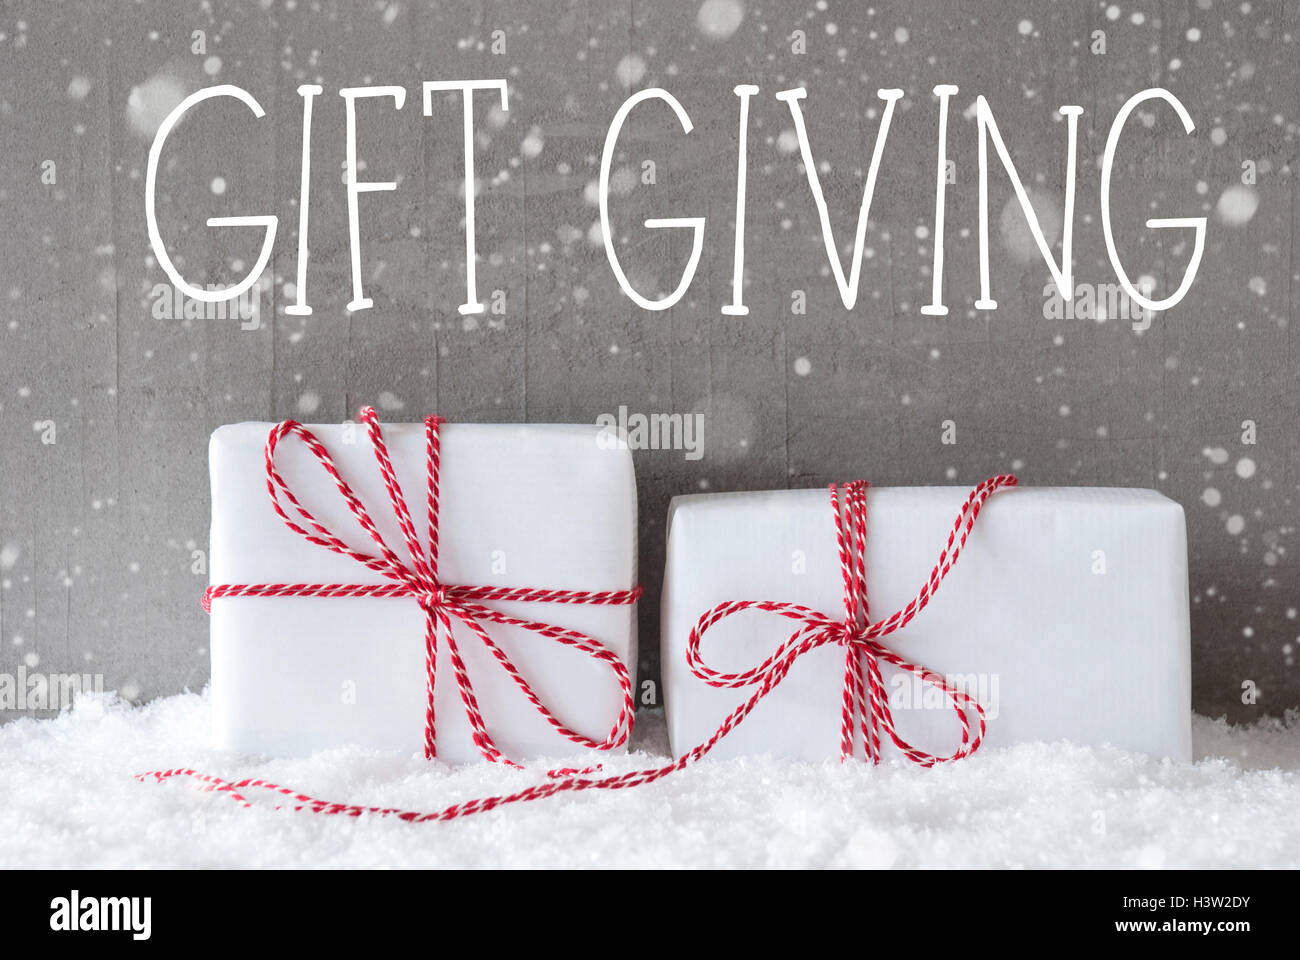 Zwei Geschenke mit Schneeflocken, Text Geschenk geben Stockfoto